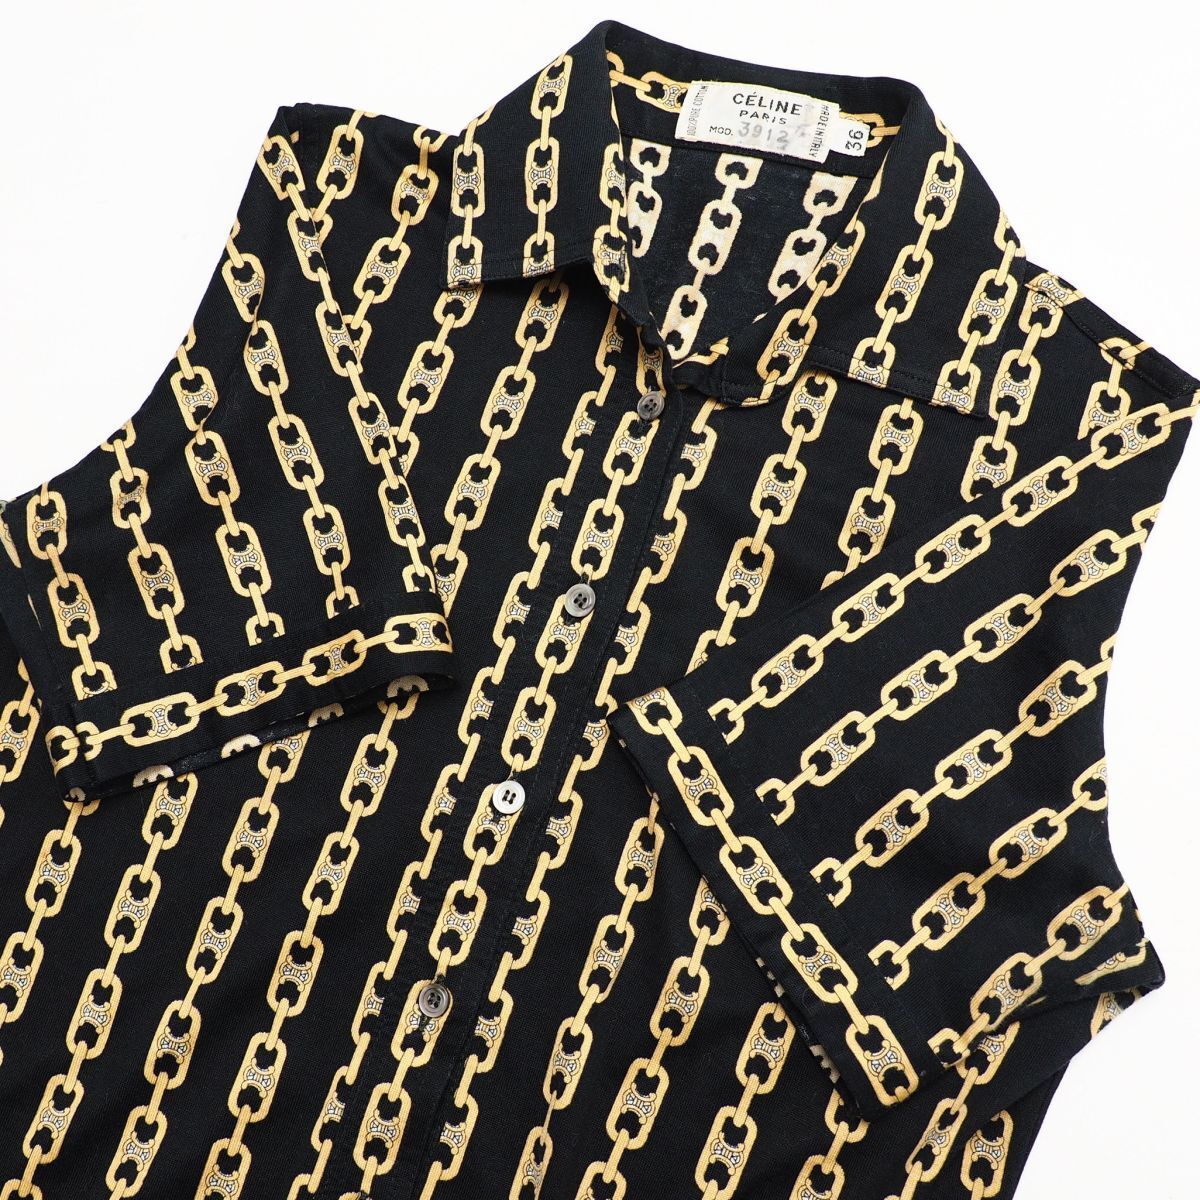 MF7984* Италия производства Celine CELINE Vintage рубашка tops хлопок cut and sewn ткань Macadam рисунок цепь рисунок чёрный × желтый цвет серия размер 36